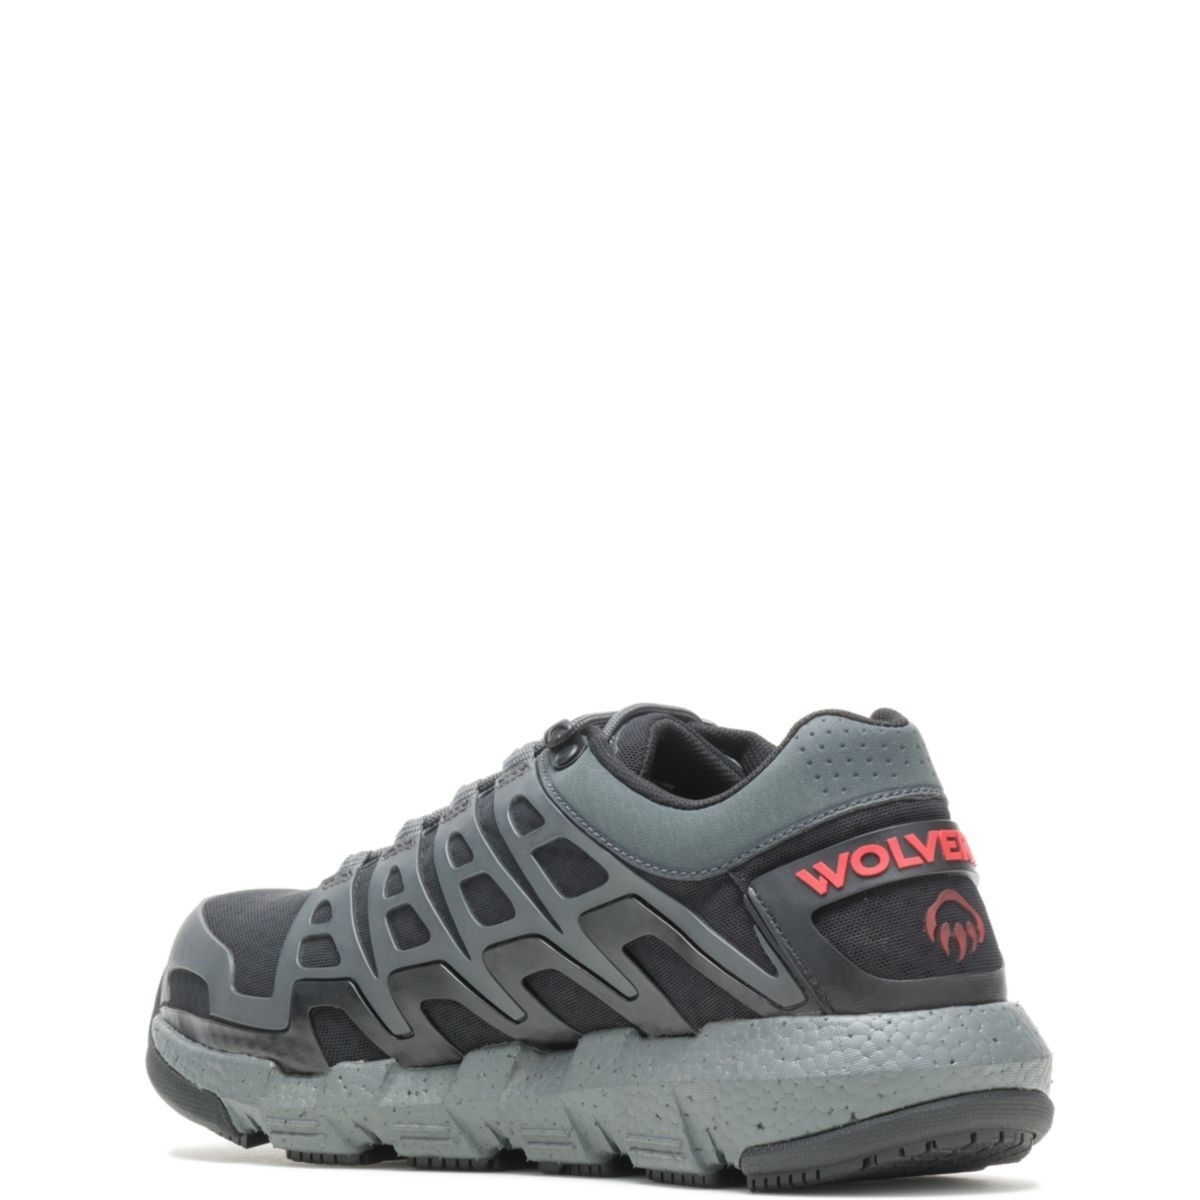 WOLVERINE Men's Rev Vent UltraSpringâ¢ DuraShocksÂ® CarbonMAXÂ® Composite Toe Work Shoe Charcoal - W211016 CHARCOAL - CHARCOAL, 11 X-Wide